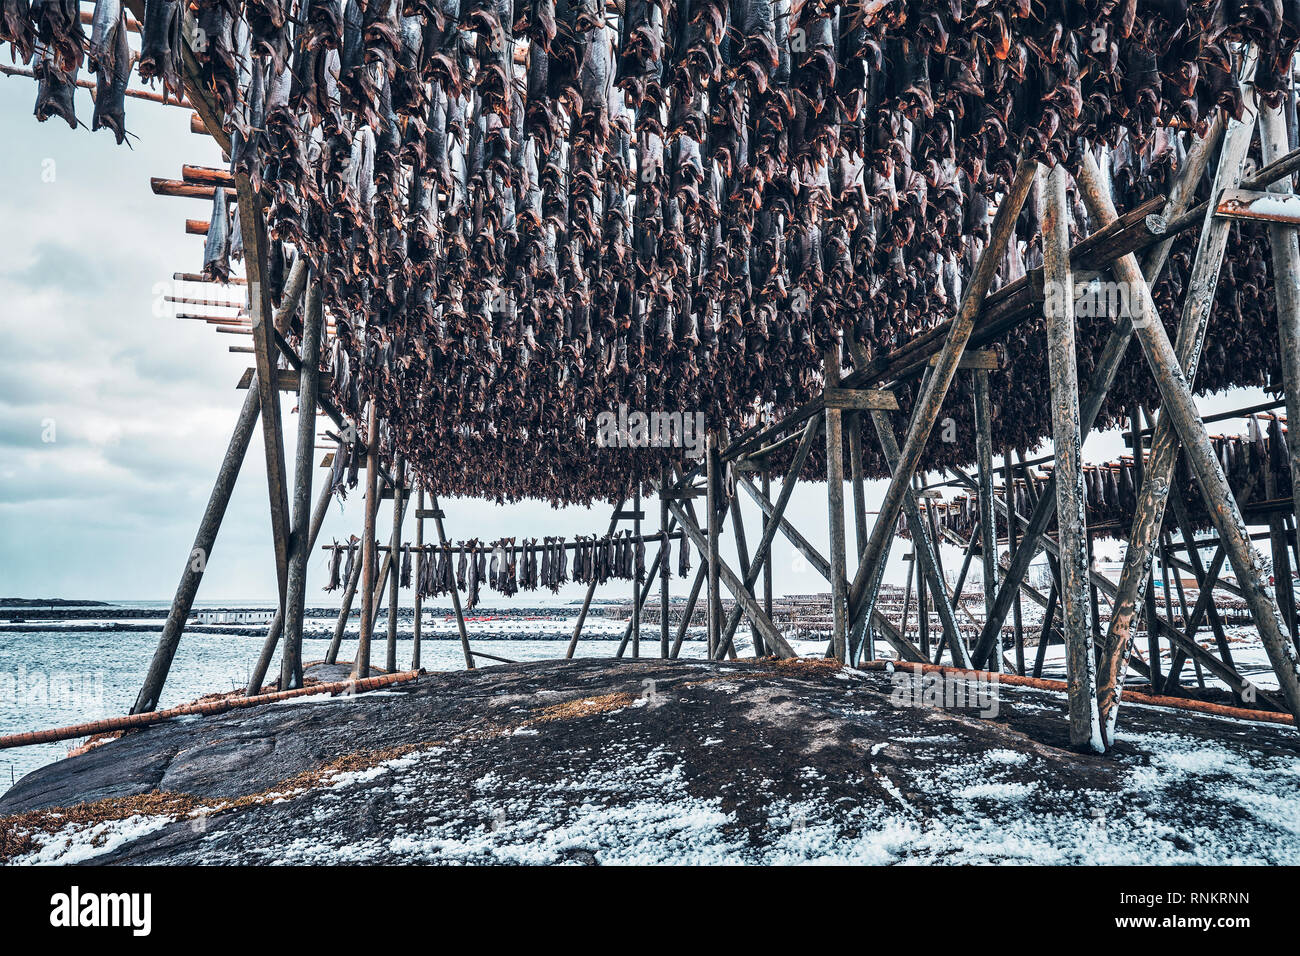 Fiocchi di essiccazione con baccalà baccalà in inverno. Reine e villaggio di pescatori, isole Lofoten in Norvegia Foto Stock